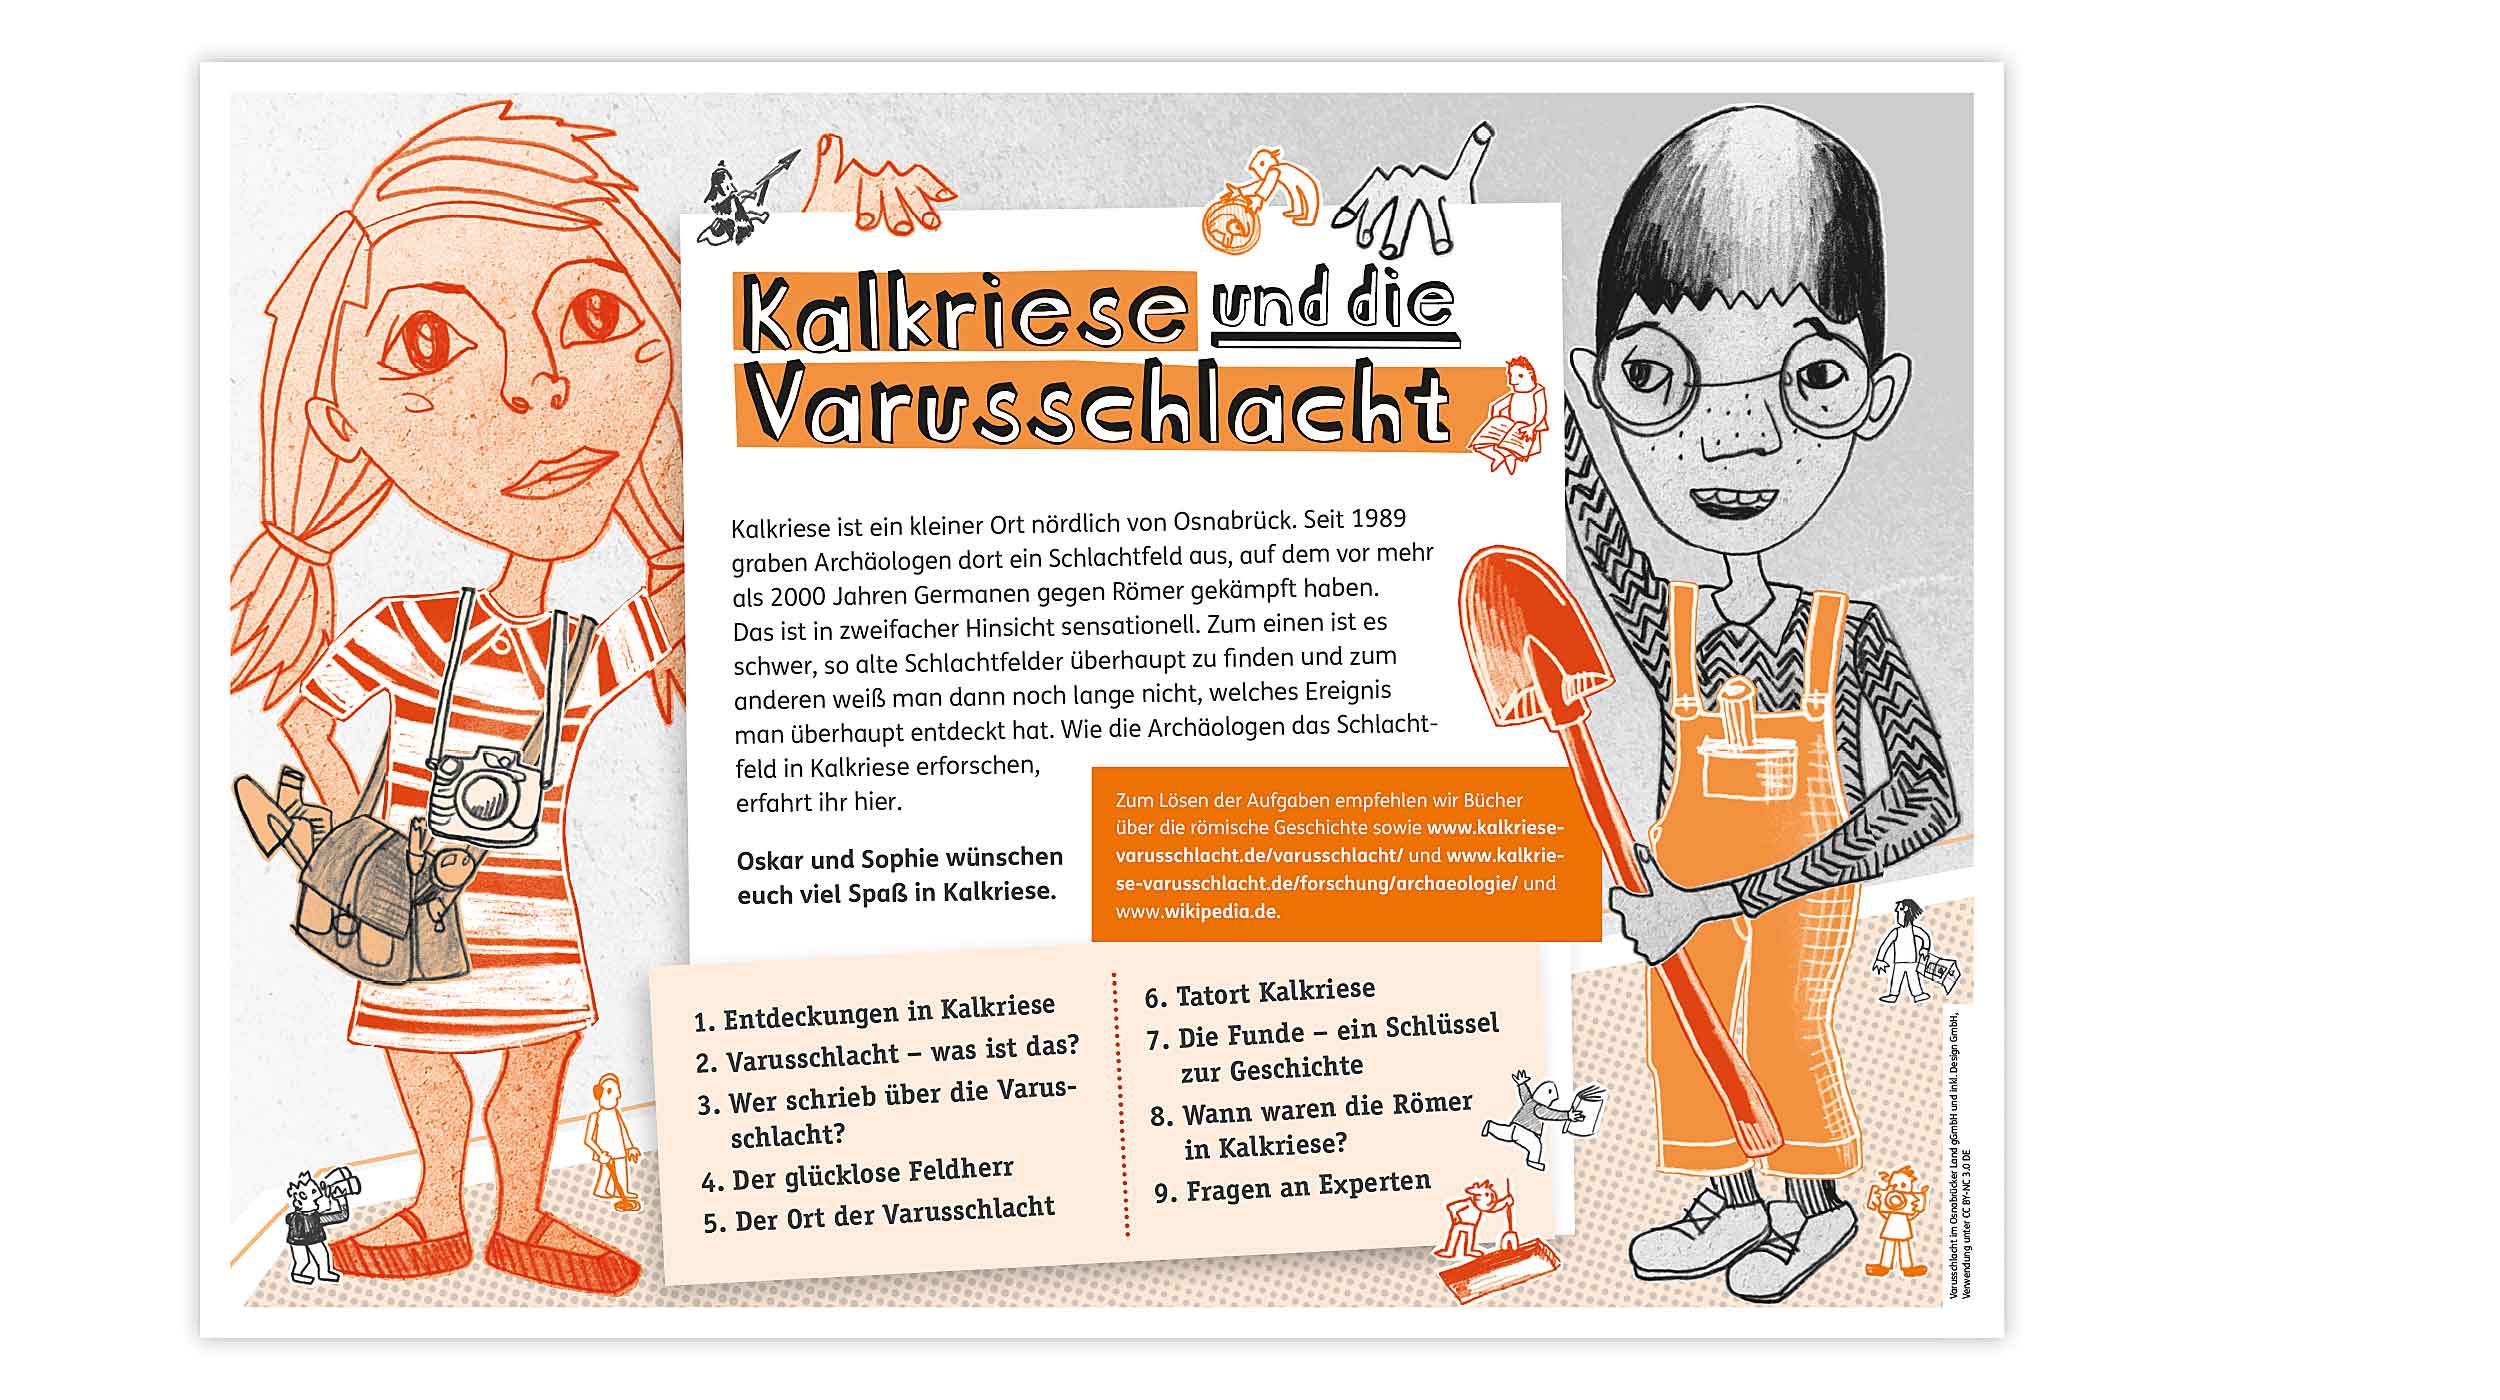 Arbeitsblatt zur Themenbeschreibung „Kalkriese und die Varusschlacht“ mit Illustration von Oskar und Sophie